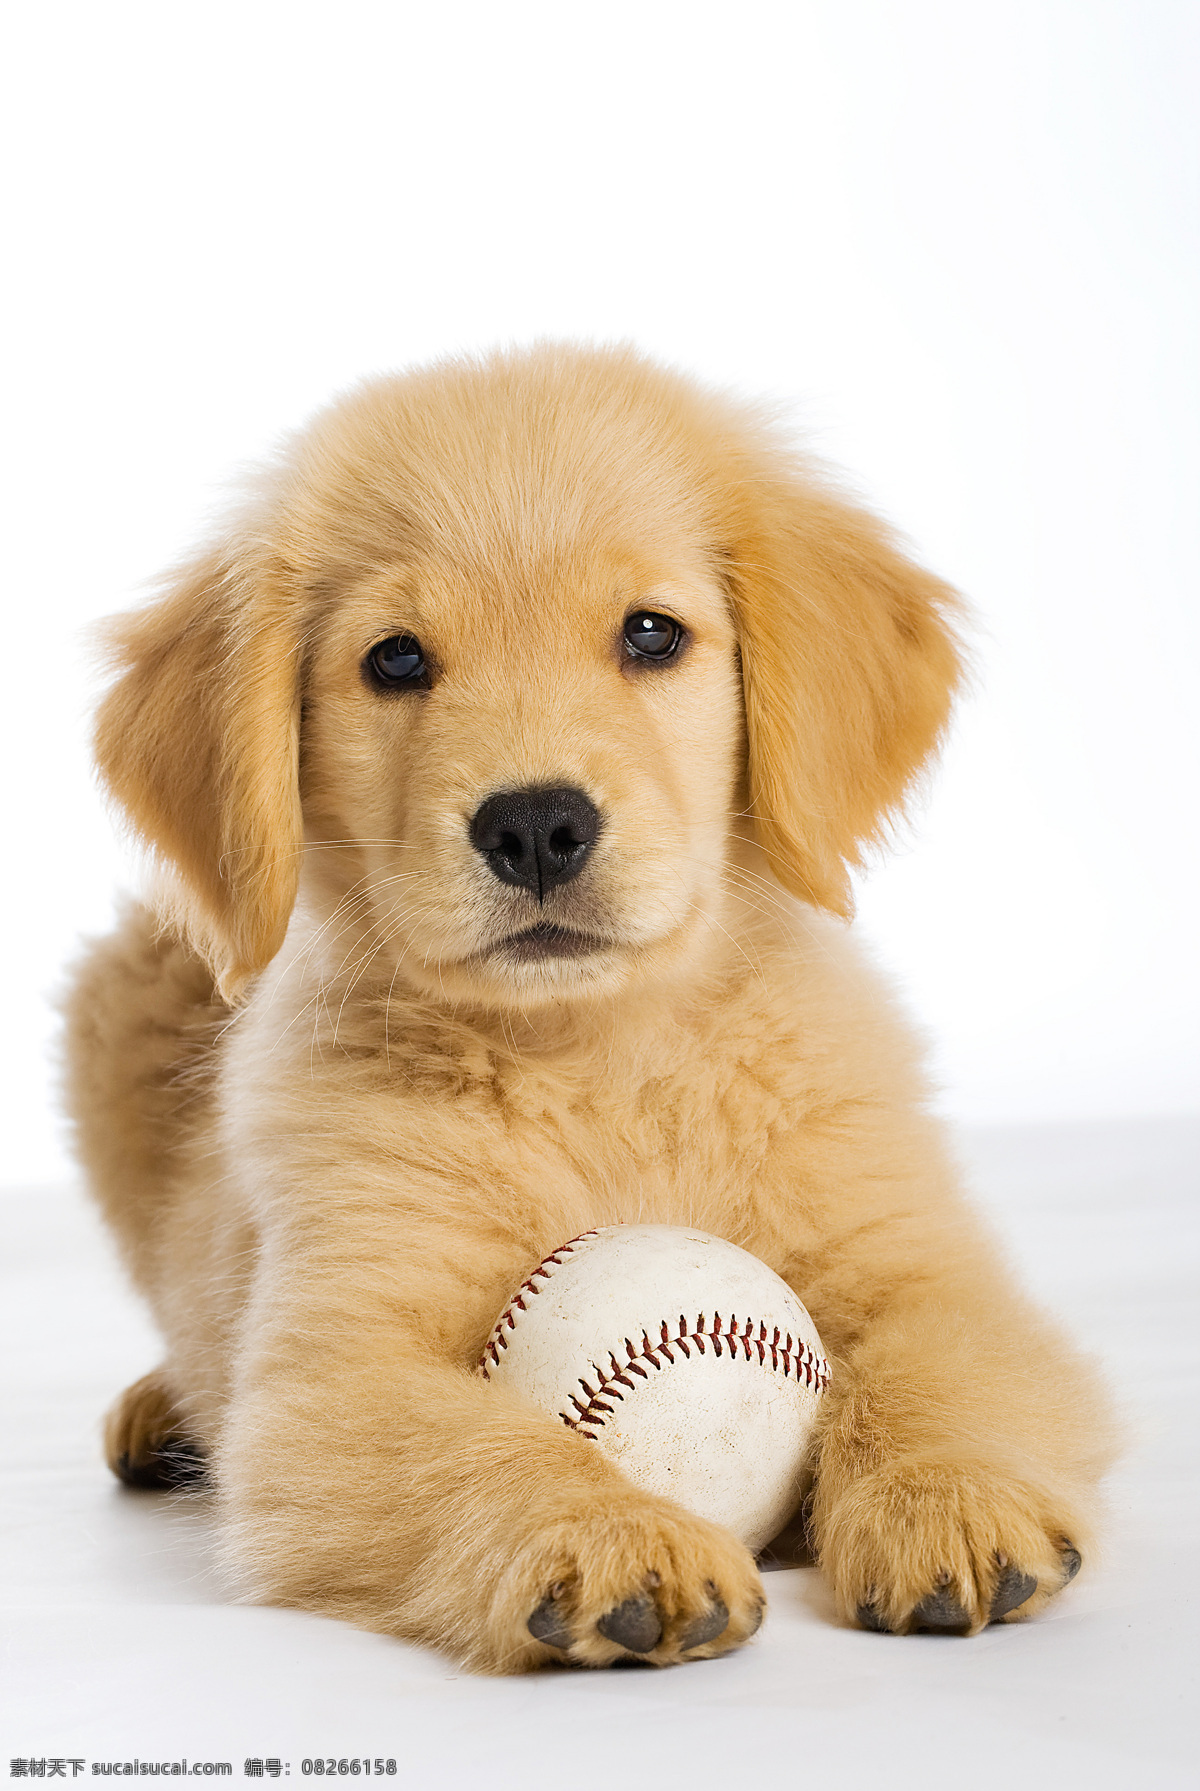 小狗 垒球 动物 宠物 可爱 玩耍 球类 狗狗图片 生物世界